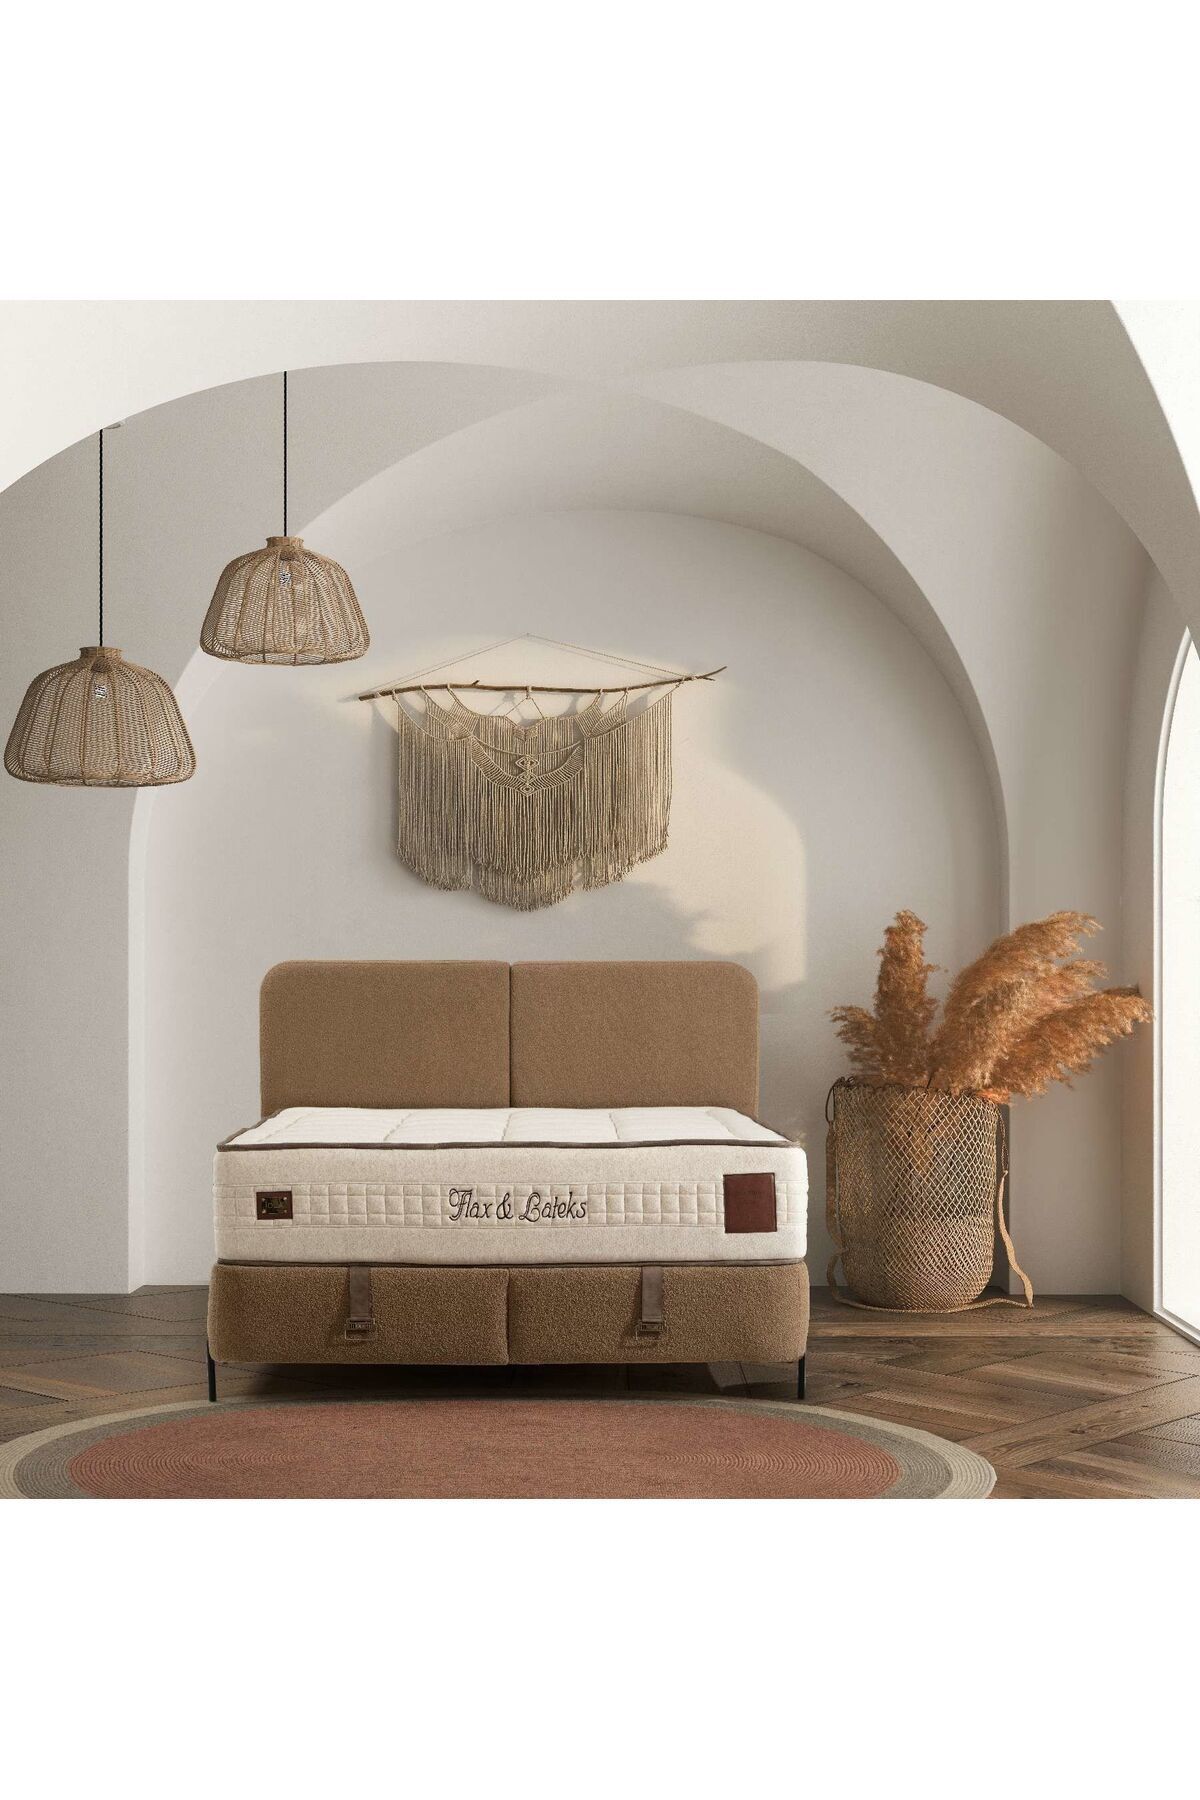 İola Melina Baza Başlık Yatak Seti 160 x 200